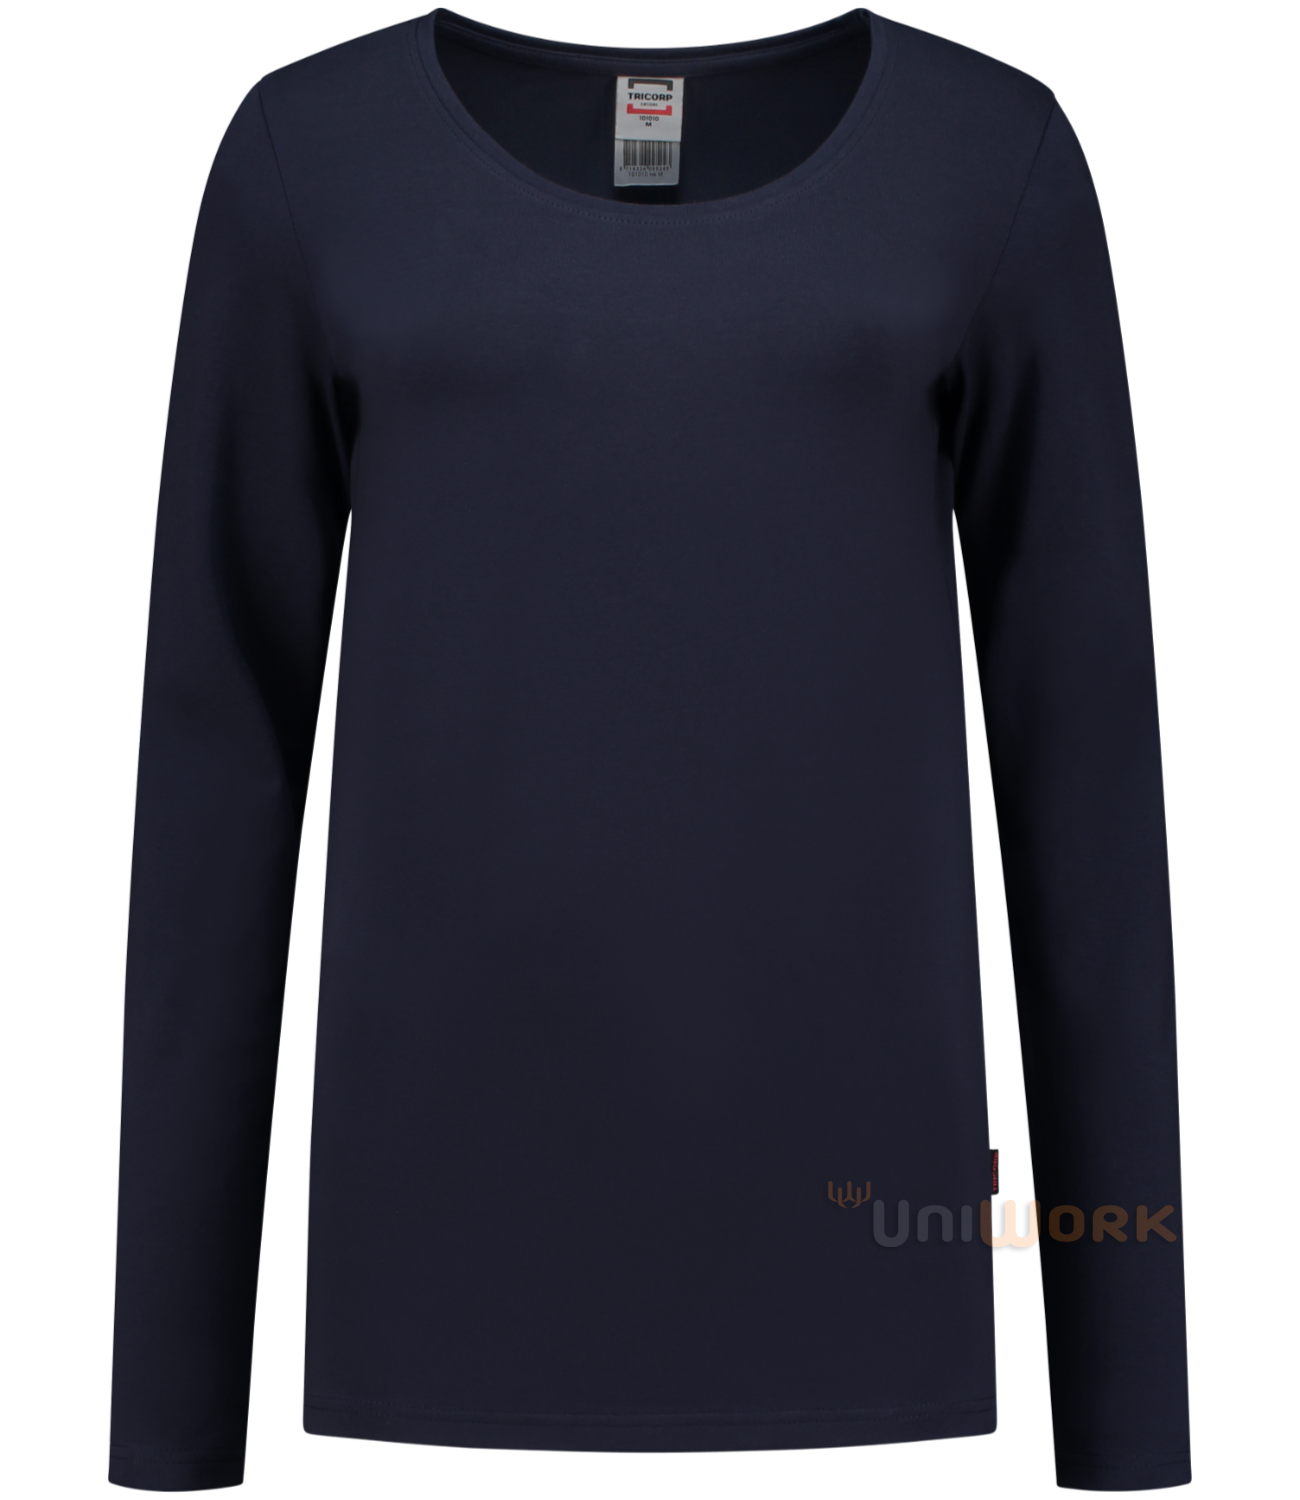 Voorspeller Aap Bepalen T-Shirt Lange Mouw Dames | Tricorp.clothing - Uniwork brandstore